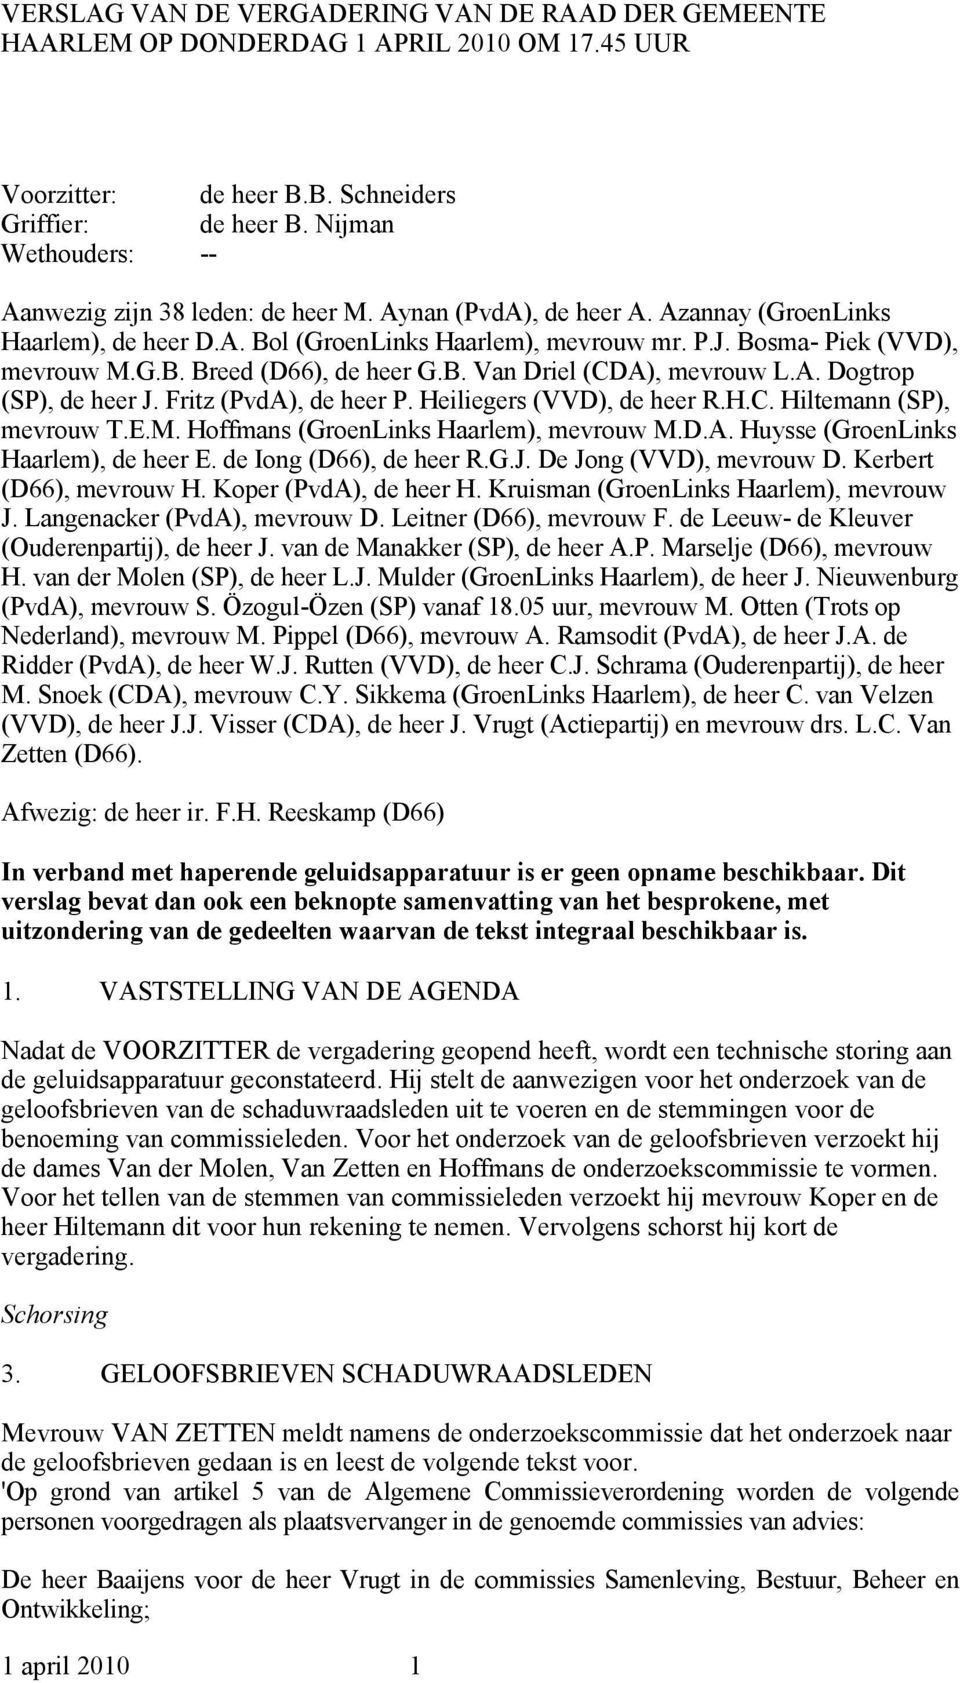 B. Van Driel (CDA), mevrouw L.A. Dogtrop (SP), de heer J. Fritz (PvdA), de heer P. Heiliegers (VVD), de heer R.H.C. Hiltemann (SP), mevrouw T.E.M. Hoffmans (GroenLinks Haarlem), mevrouw M.D.A. Huysse (GroenLinks Haarlem), de heer E.